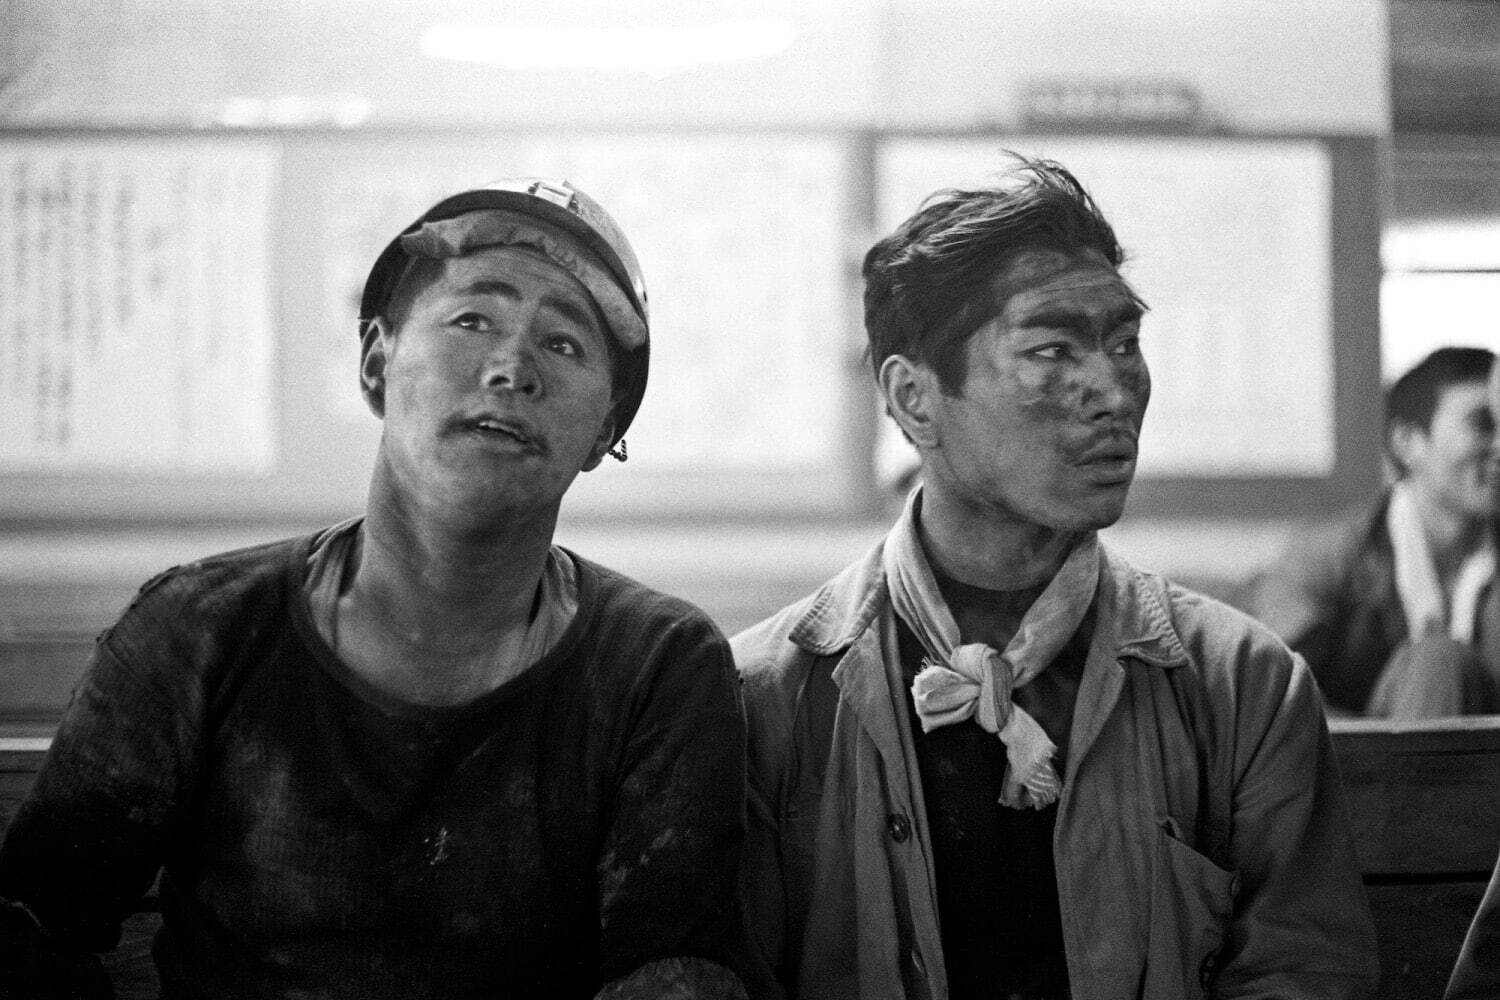 本橋成一 《羽幌炭砿　北海道 羽幌町》 「炭鉱」より 1968年
©Motohashi Seiichi